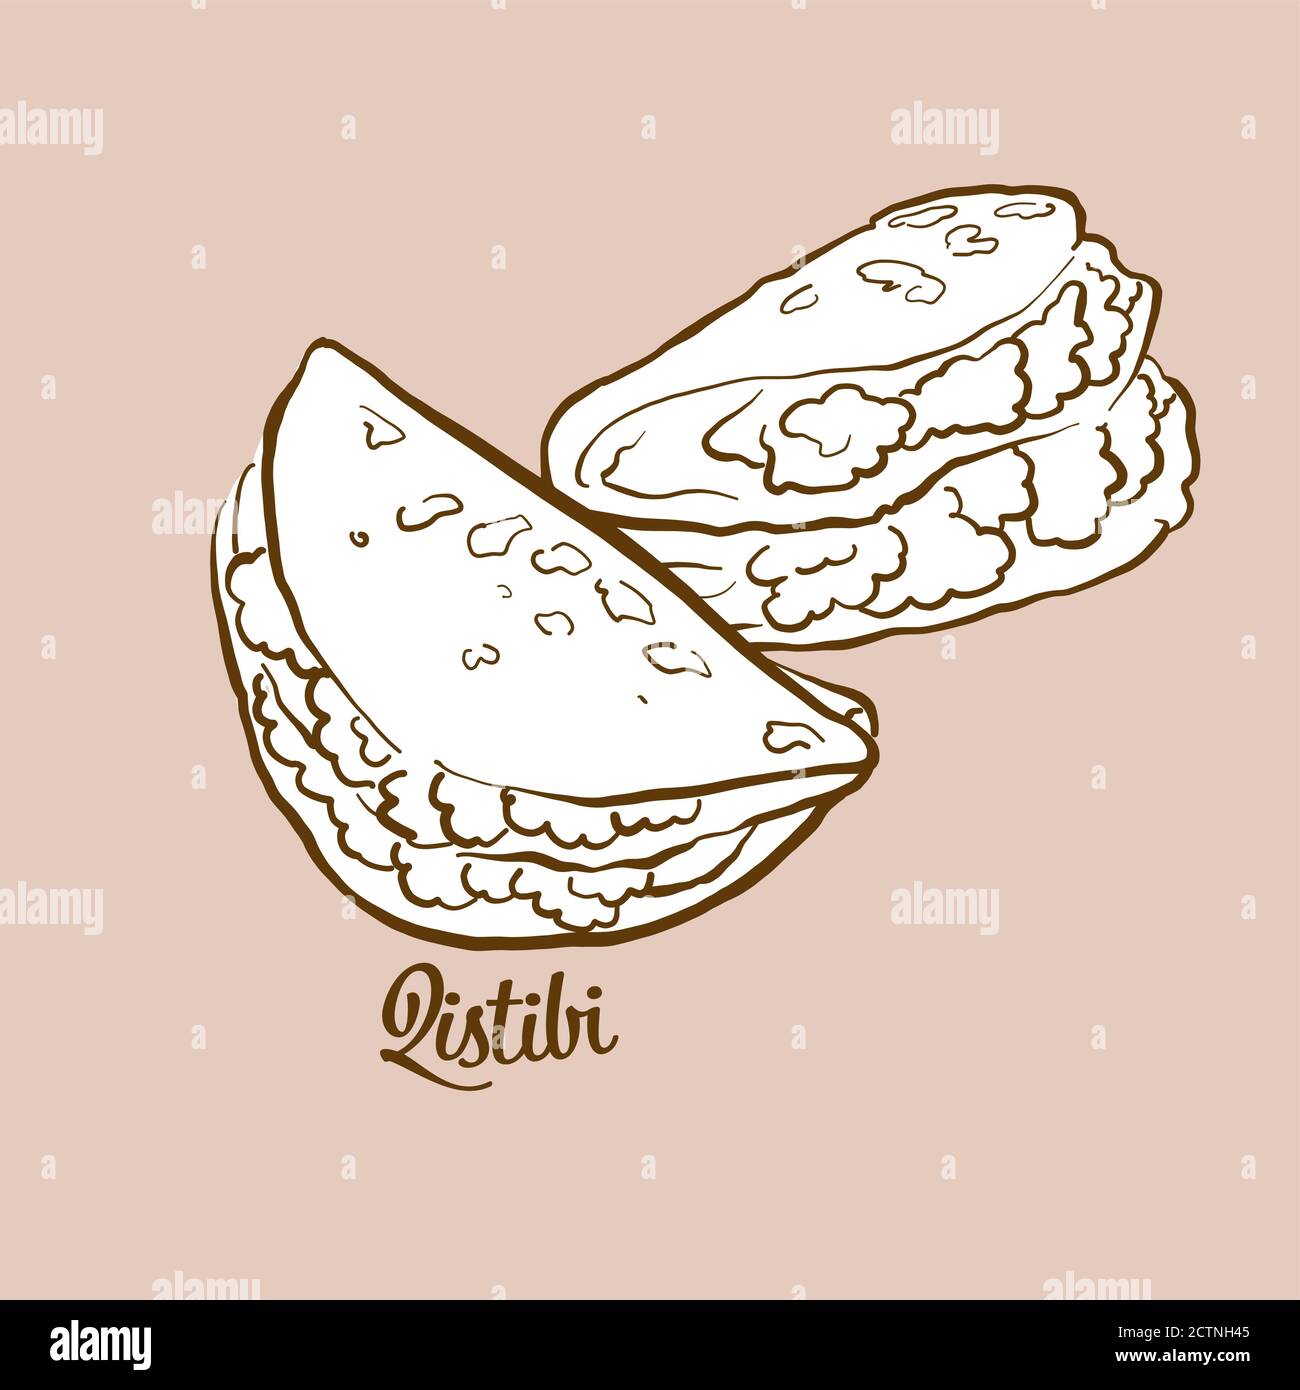 Illustrazione del pane Qistibi disegnato a mano. Pane piatto, di solito noto in Tatarstan, Bashkortostan. Serie di disegni vettoriali. Illustrazione Vettoriale